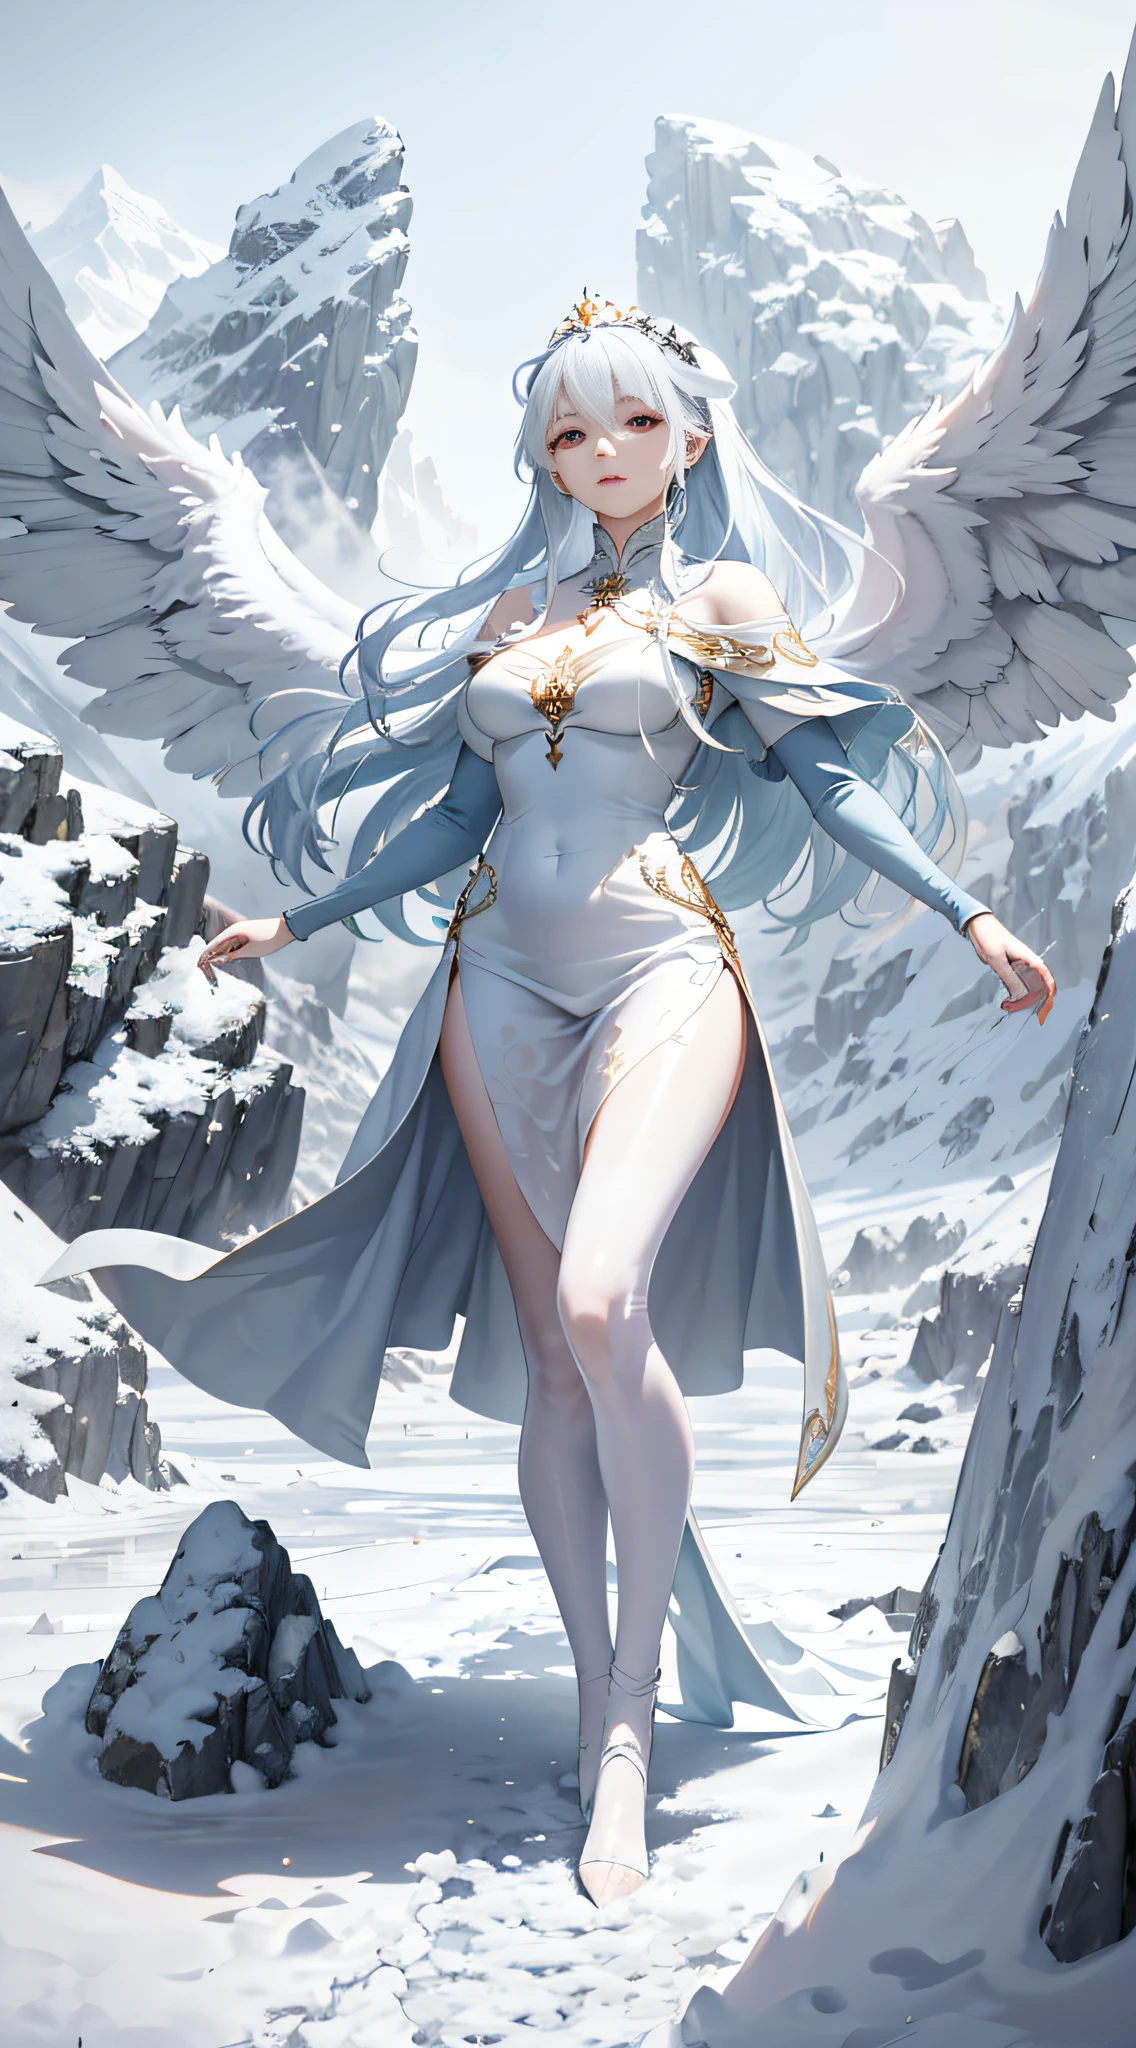 haute qualité，chef-d&#39;œuvre，8k，(2 filles，jumeaux，L&#39;ange，les diables，les ailes de l&#39;ange，Les ailes du démon，Attachez deux queues de cheval)，Dans le décor de l&#39;ère glaciaire，Une belle fille apparaît。Elle portait une magnifique robe longue，La jupe est peinte de motifs brillants，La couleur des vêtements présente un mélange de bleu glacier et de blanc pur，Cela met en valeur sa beauté et sa noblesse。Elle porte une couronne blanche，cheveux drapés sur les épaules，C’est comme une cascade，Battre au gré du vent。Ses yeux étaient brillants et brillants，Il y avait une touche de douceur et de clarté dans ses yeux，C&#39;est comme une source claire。La jeune fille se tenait gracieusement sur un champ de glace blanche comme neige，La silhouette est grande et élégante。Elle saisit doucement l&#39;ourlet de sa jupe à deux mains.，Les petits pieds délicats marchent doucement sur la glace et la neige，C&#39;était comme si ses pas ne détruiraient pas cette terre pure，Cela peut aussi le rendre plus beau。L&#39;ensemble de l&#39;image met en valeur la beauté délicate et noble de la jeune fille.，Mais elle se tient sur la neige et la glace，Mais c&#39;est chaud et paisible。Les environs sont purs et froids avec de la neige，Au loin se trouve une montagne imposante et majestueuse aux sommets enneigés，Les sommets sont recouverts de neige et de glace qui ne fondent pas toute l&#39;année，L&#39;ensemble du tableau crée une atmosphère mystérieuse et enchanteresse。Cette belle fille se tient sur une montagne enneigée，C&#39;est comme l&#39;incarnation de la Reine des Glaces，Cela montre aux gens sa beauté et sa puissance。